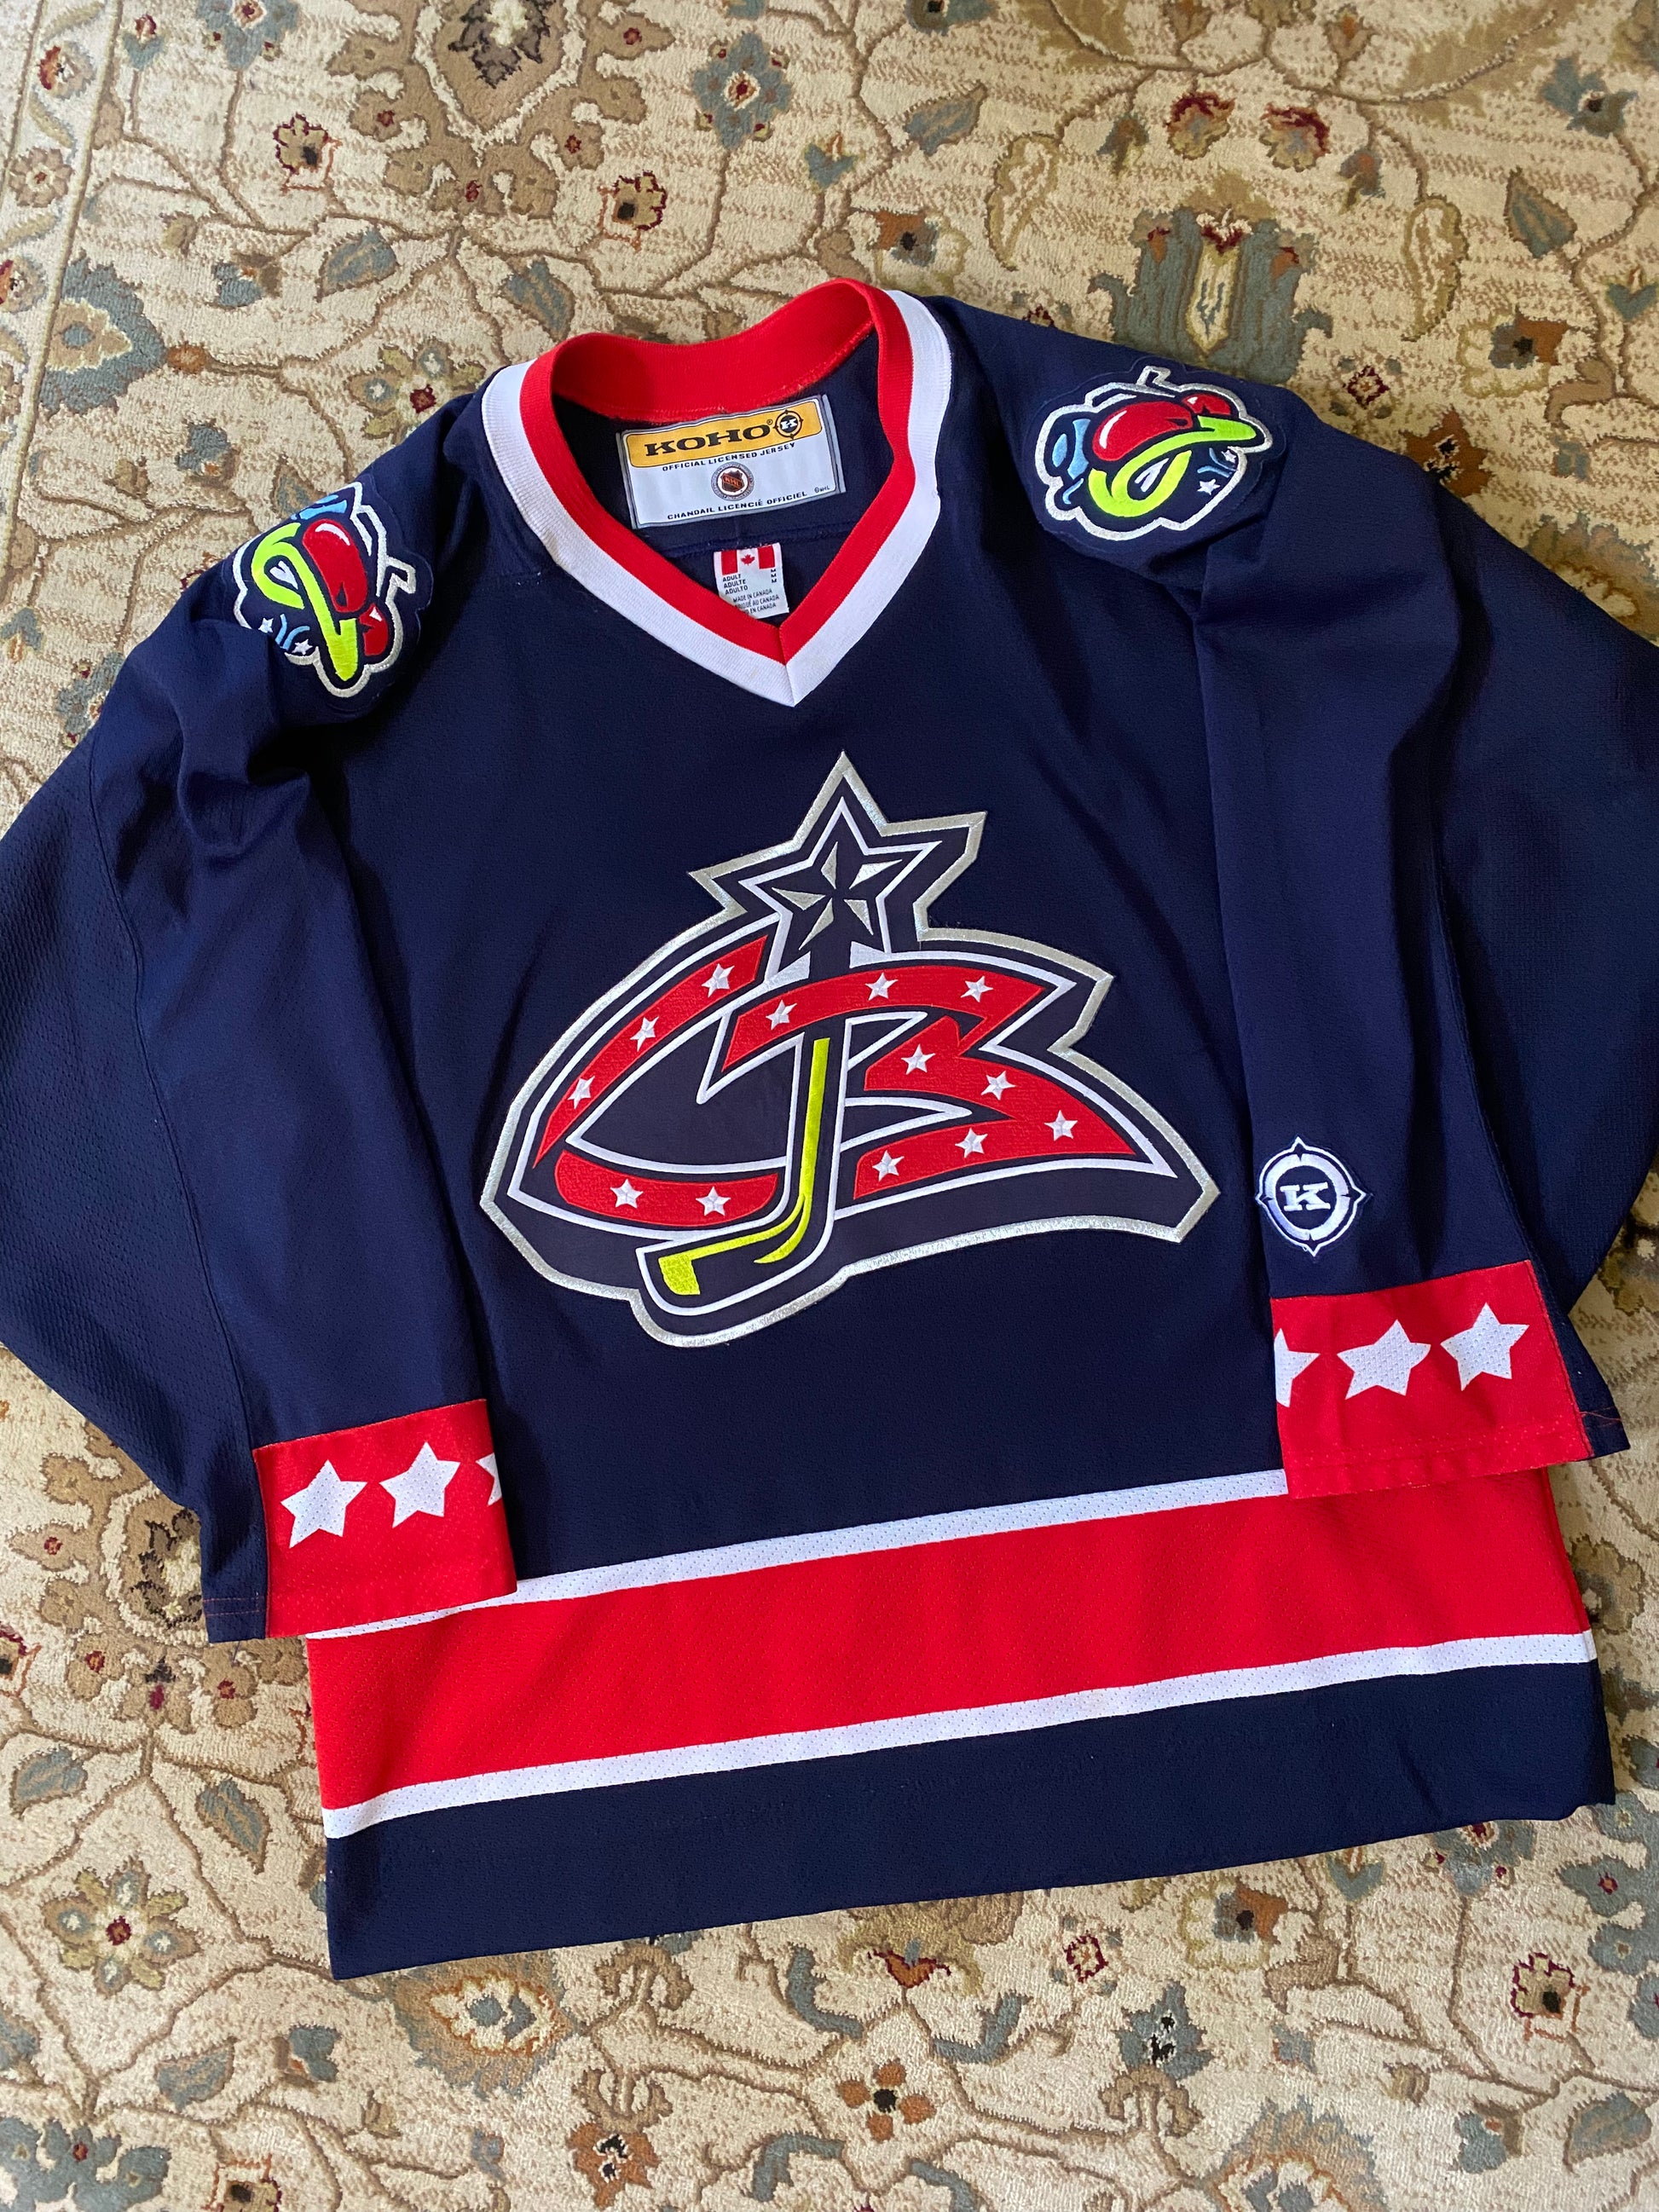 Columbus-blue-jackets Jersey / Vintage NHL Hockey / KOHO 